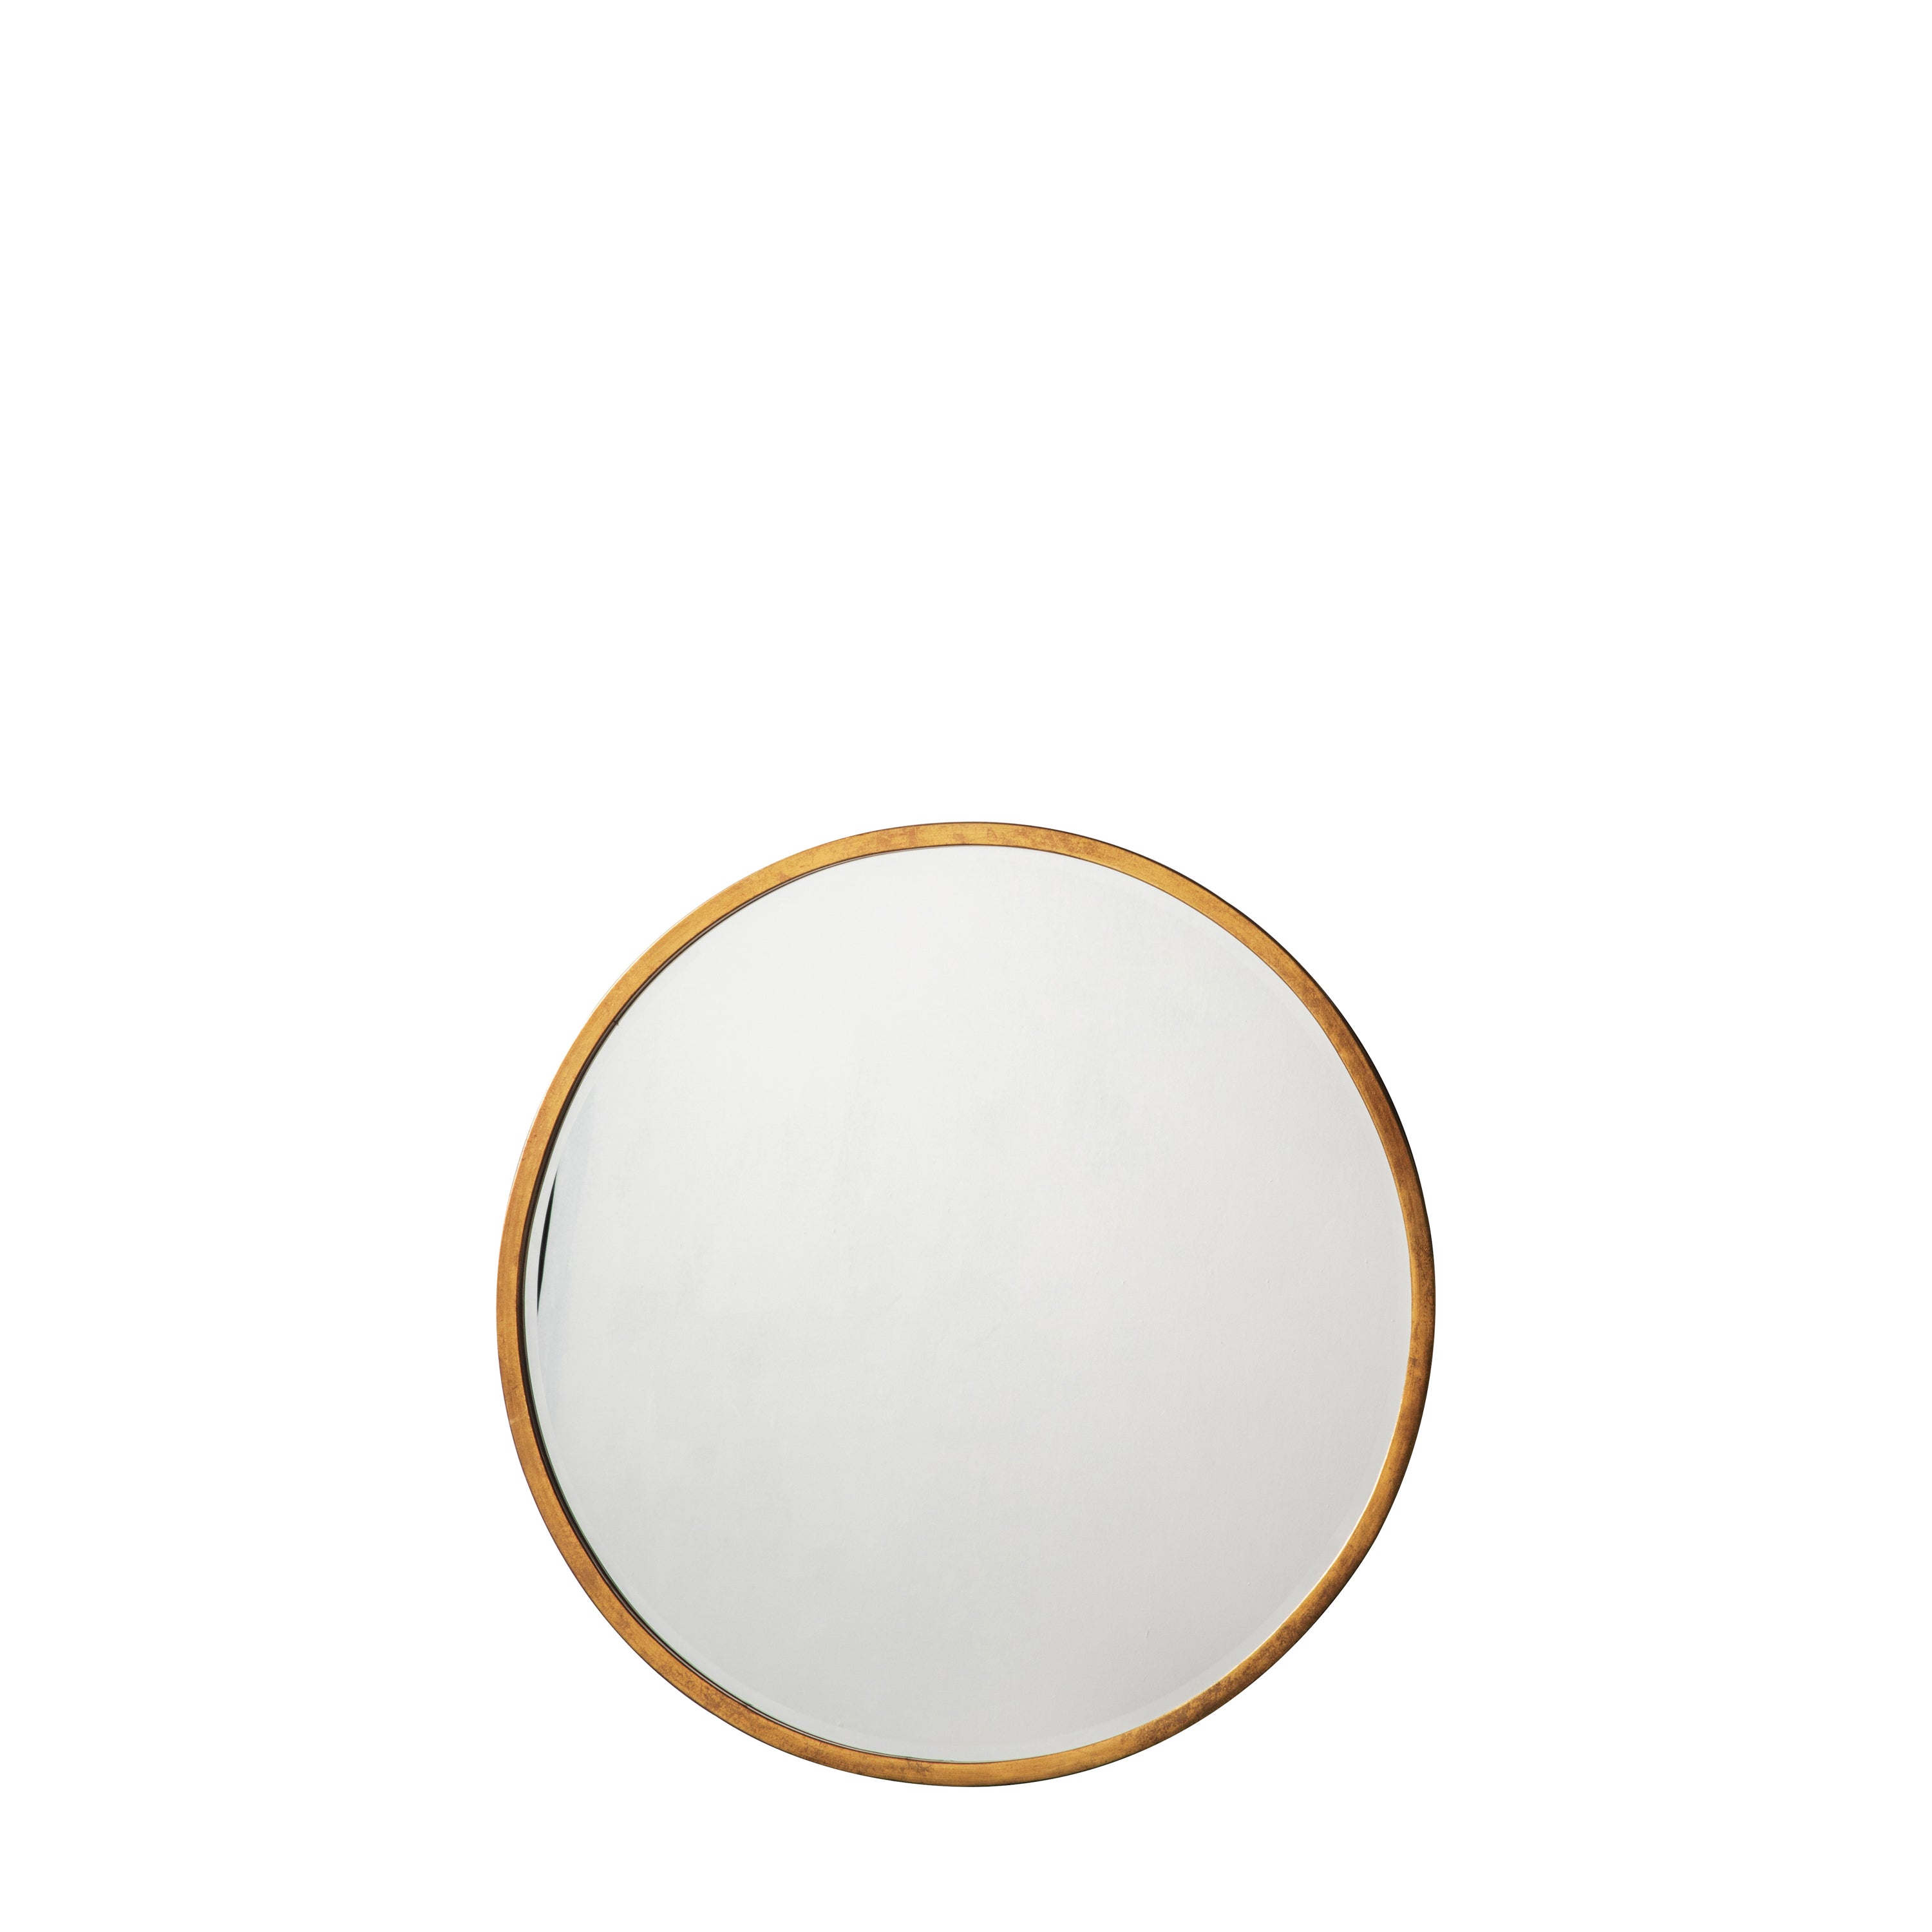 Higgins Round Mirror Antique Gold 600x600mm